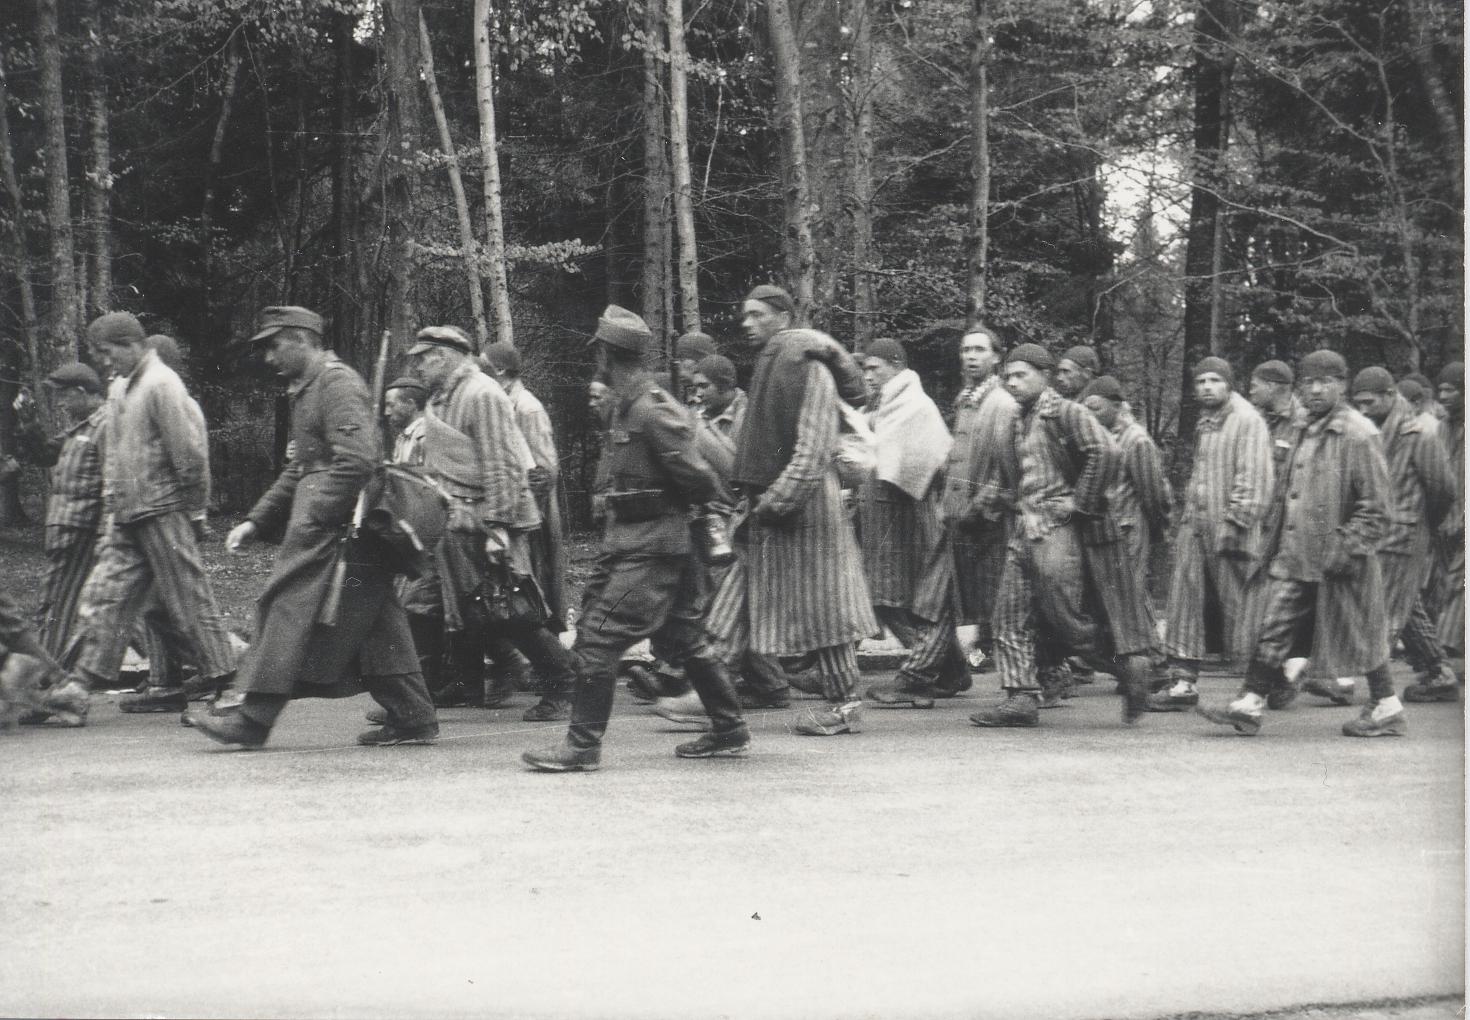 Grünwald, nei pressi di Monaco, 29 aprile 1945. Prigionieri durante una marcia di evacuazione proveniente dal campo di Dachau fotografati clandestinamente da una casa